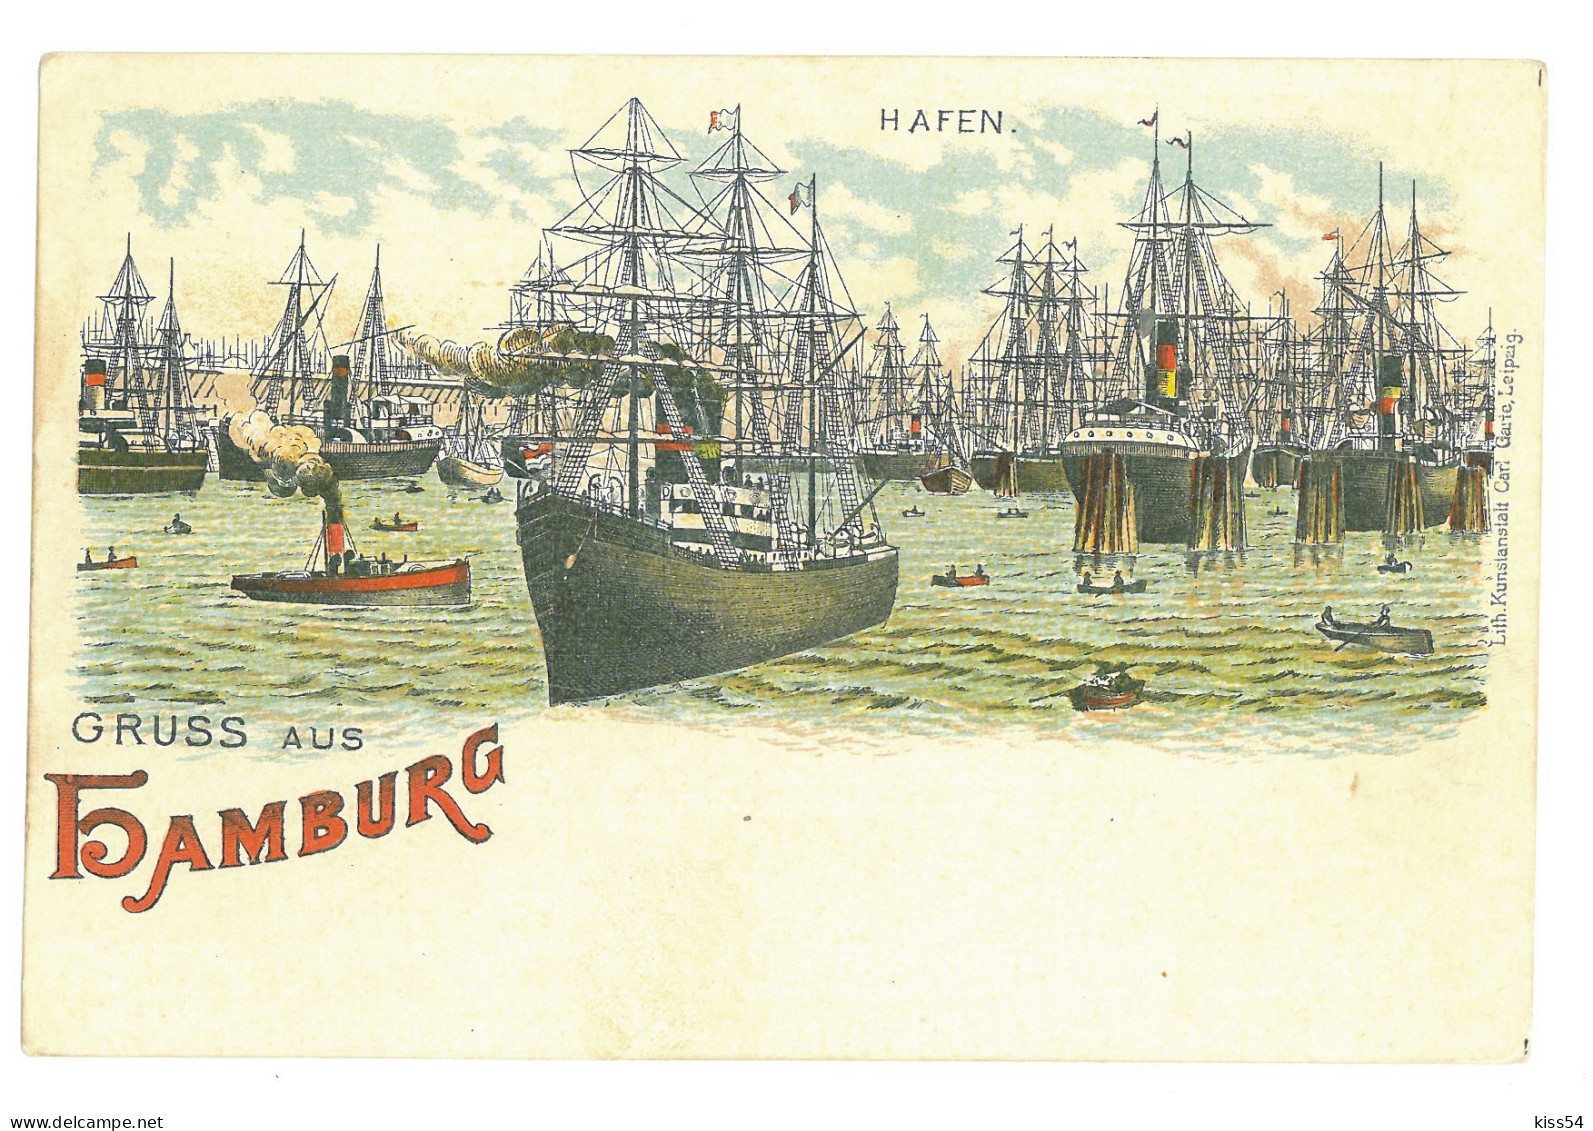 GER 20 - 16924 HAMBURG, Litho, Germany - Old Postcard - Unused - Harburg